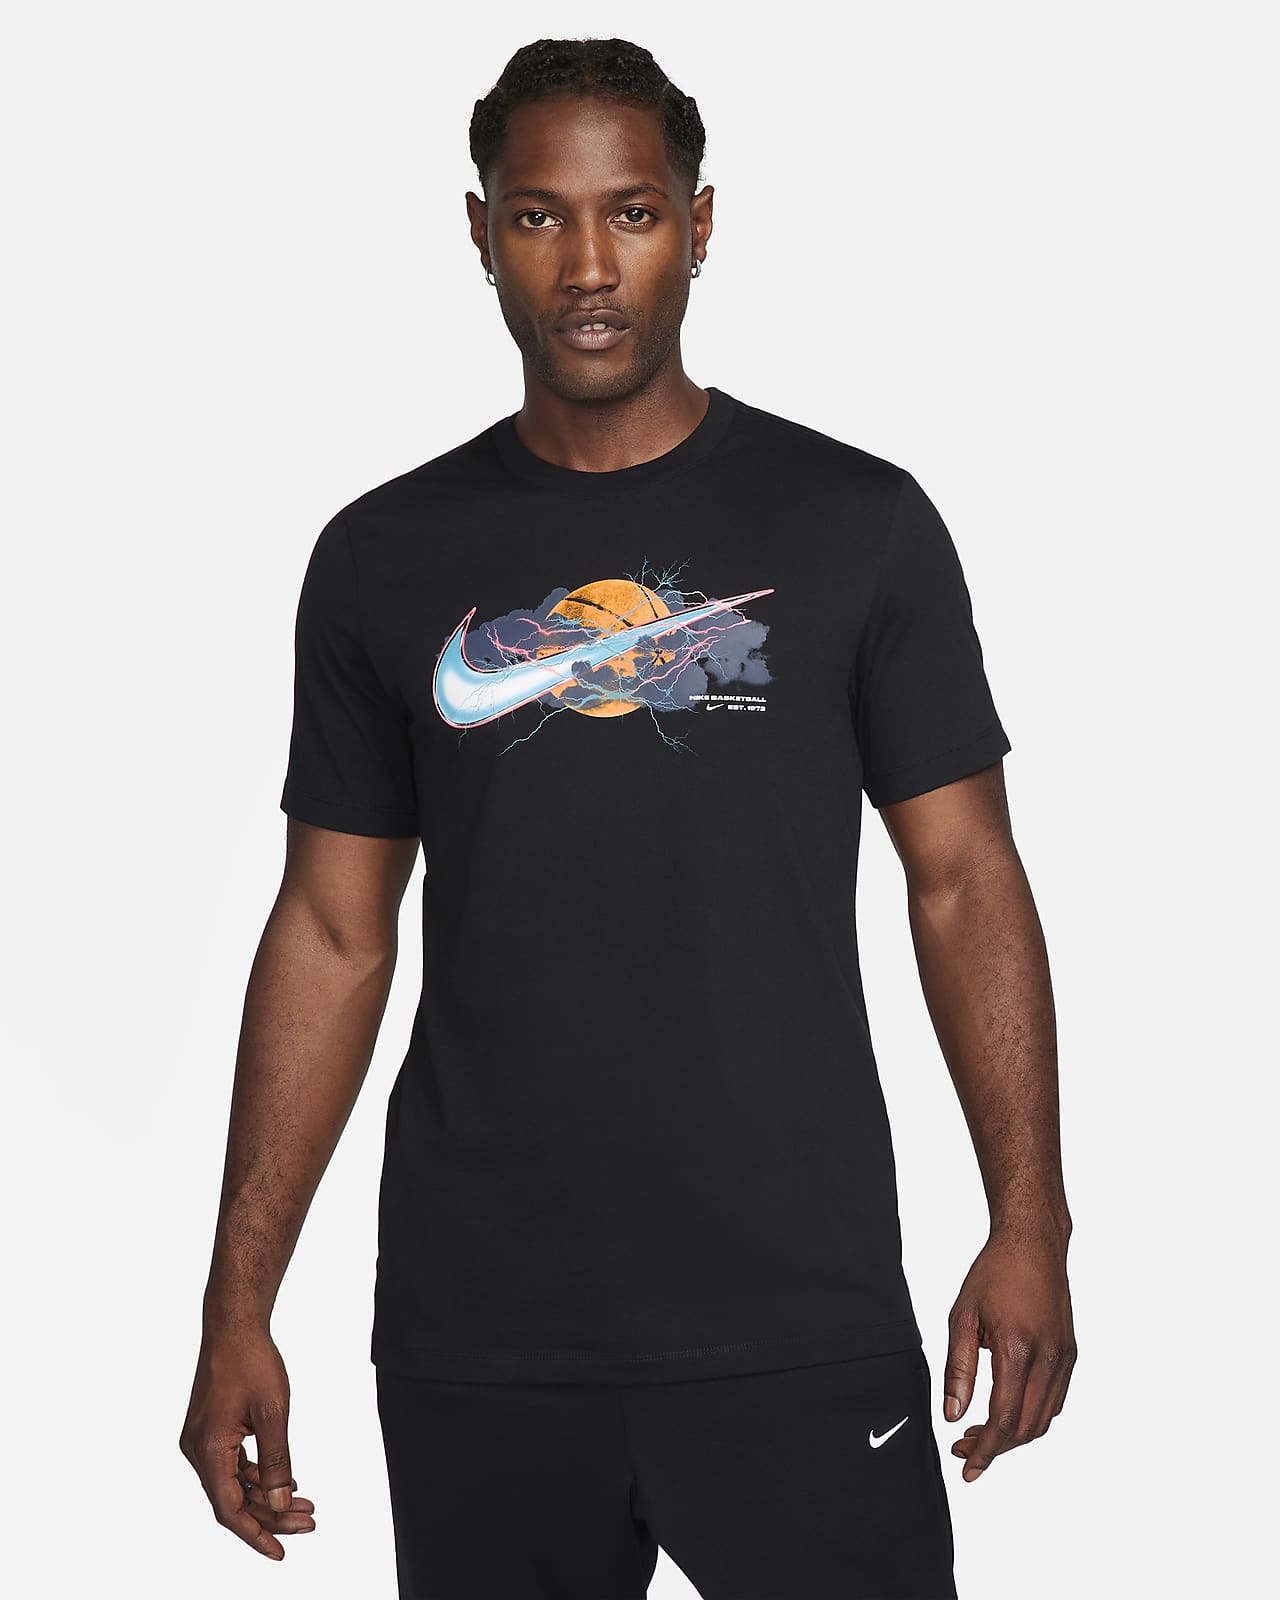 Nike Mens T Shirt T-Shirt Retro TShirt Branded Sports Cotton Crew